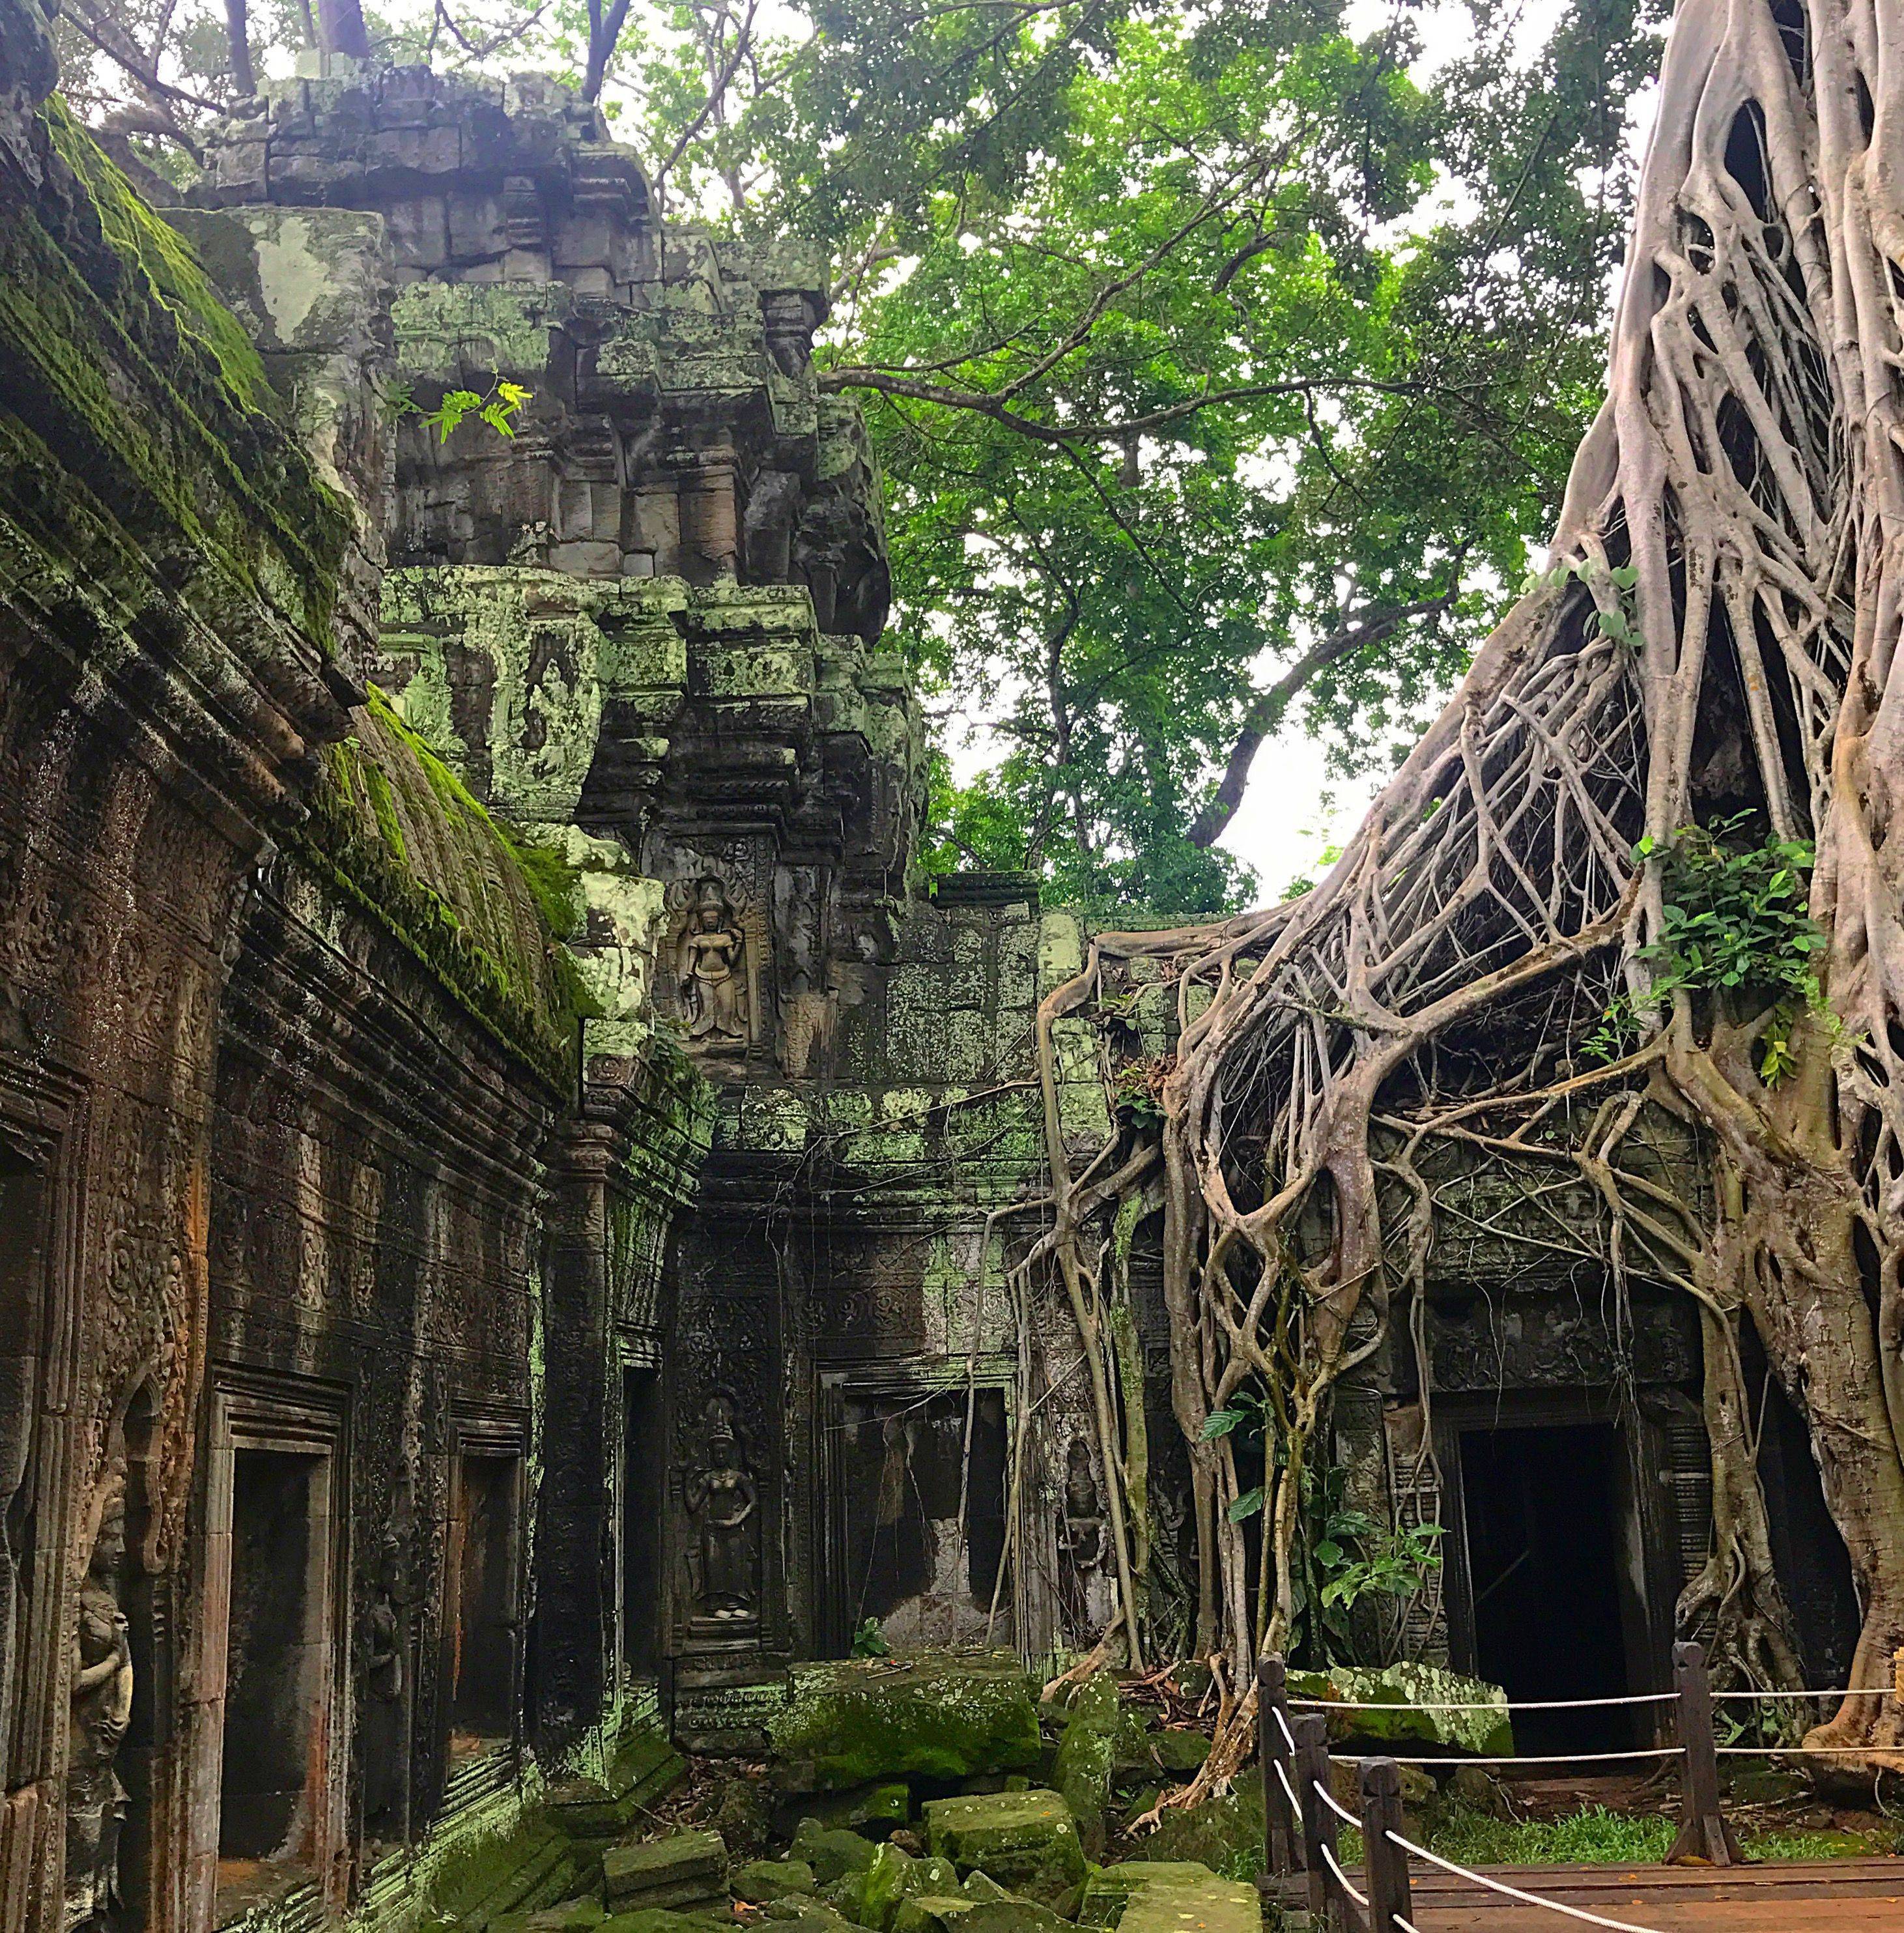 Что посмотреть в камбодже туристу - топ-5 достопримечательностей